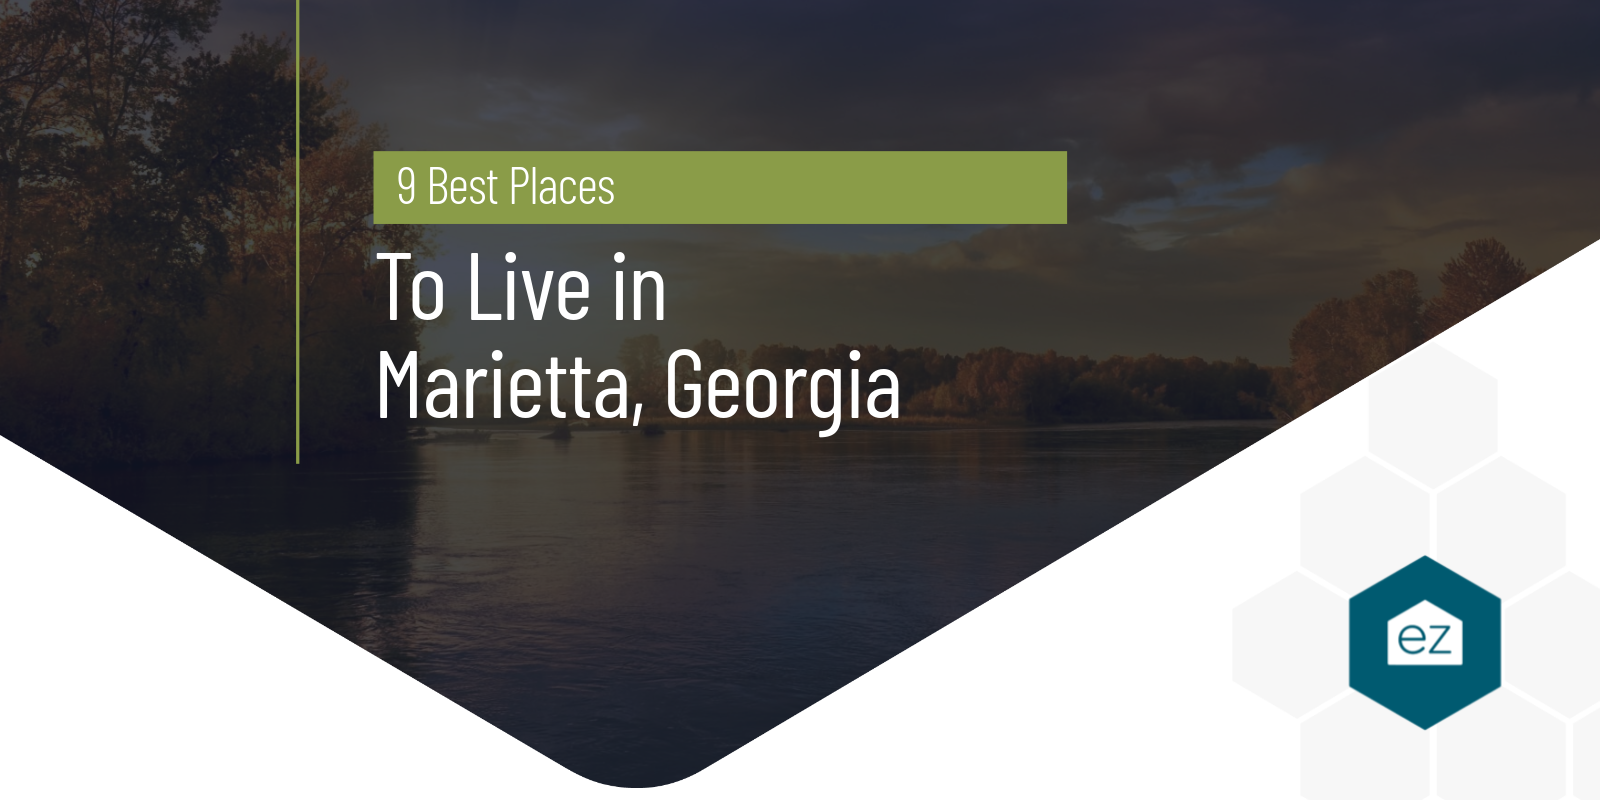 9 Best Places to Live in Marietta, Georgia